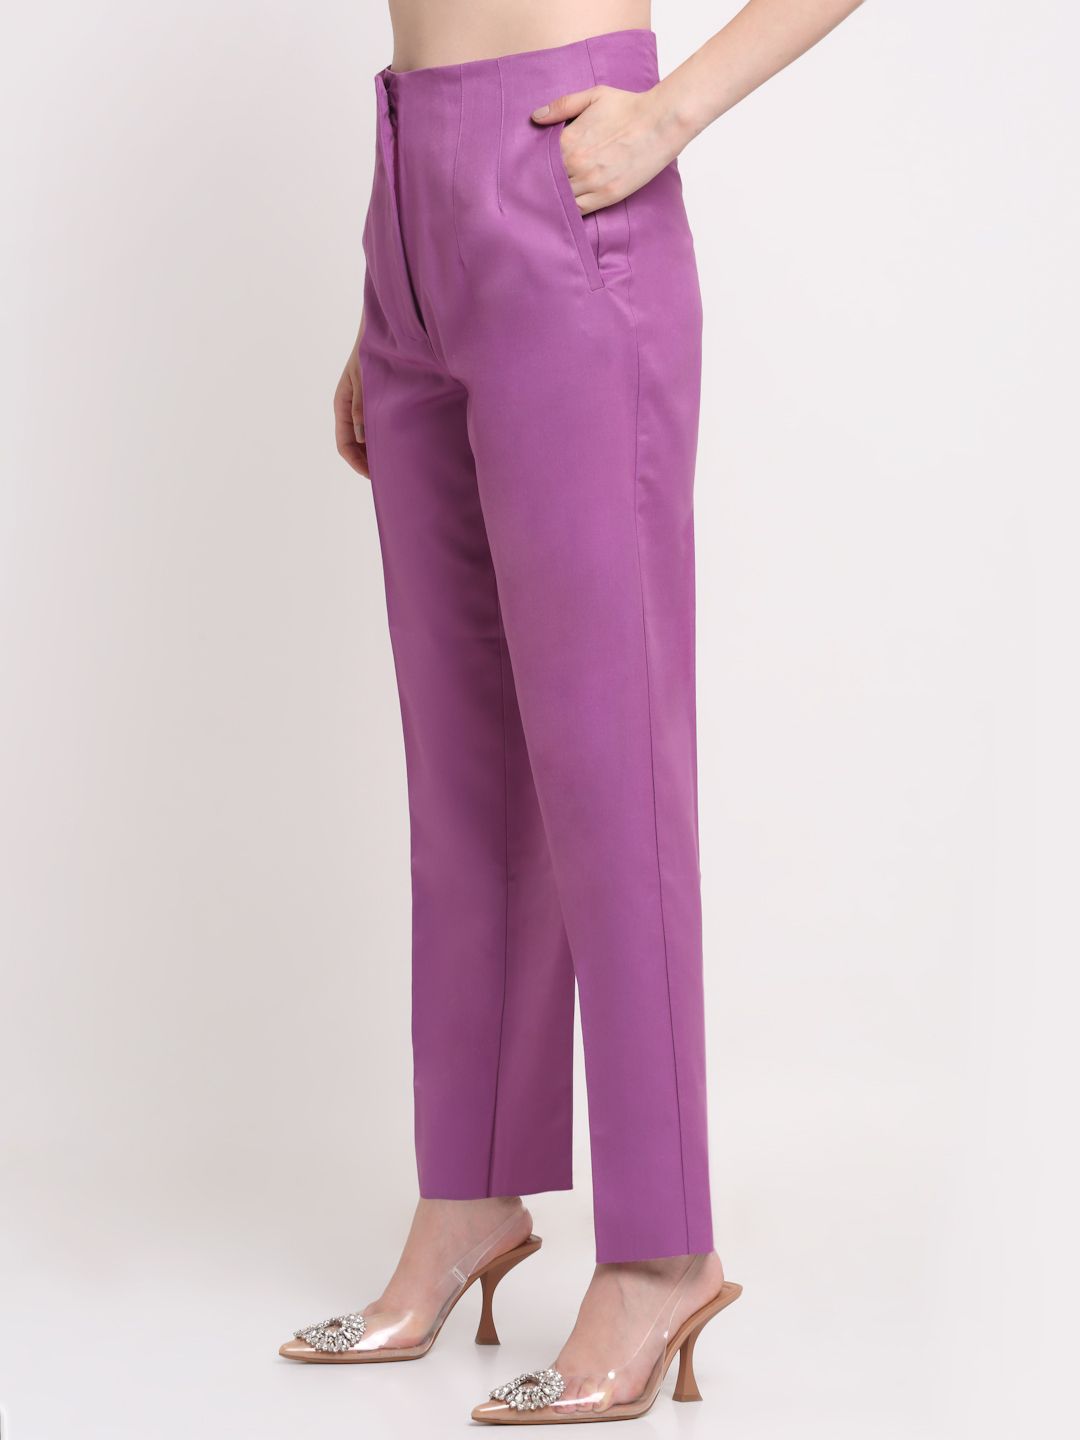 Women Viscose Lycra Solid Purple trousers